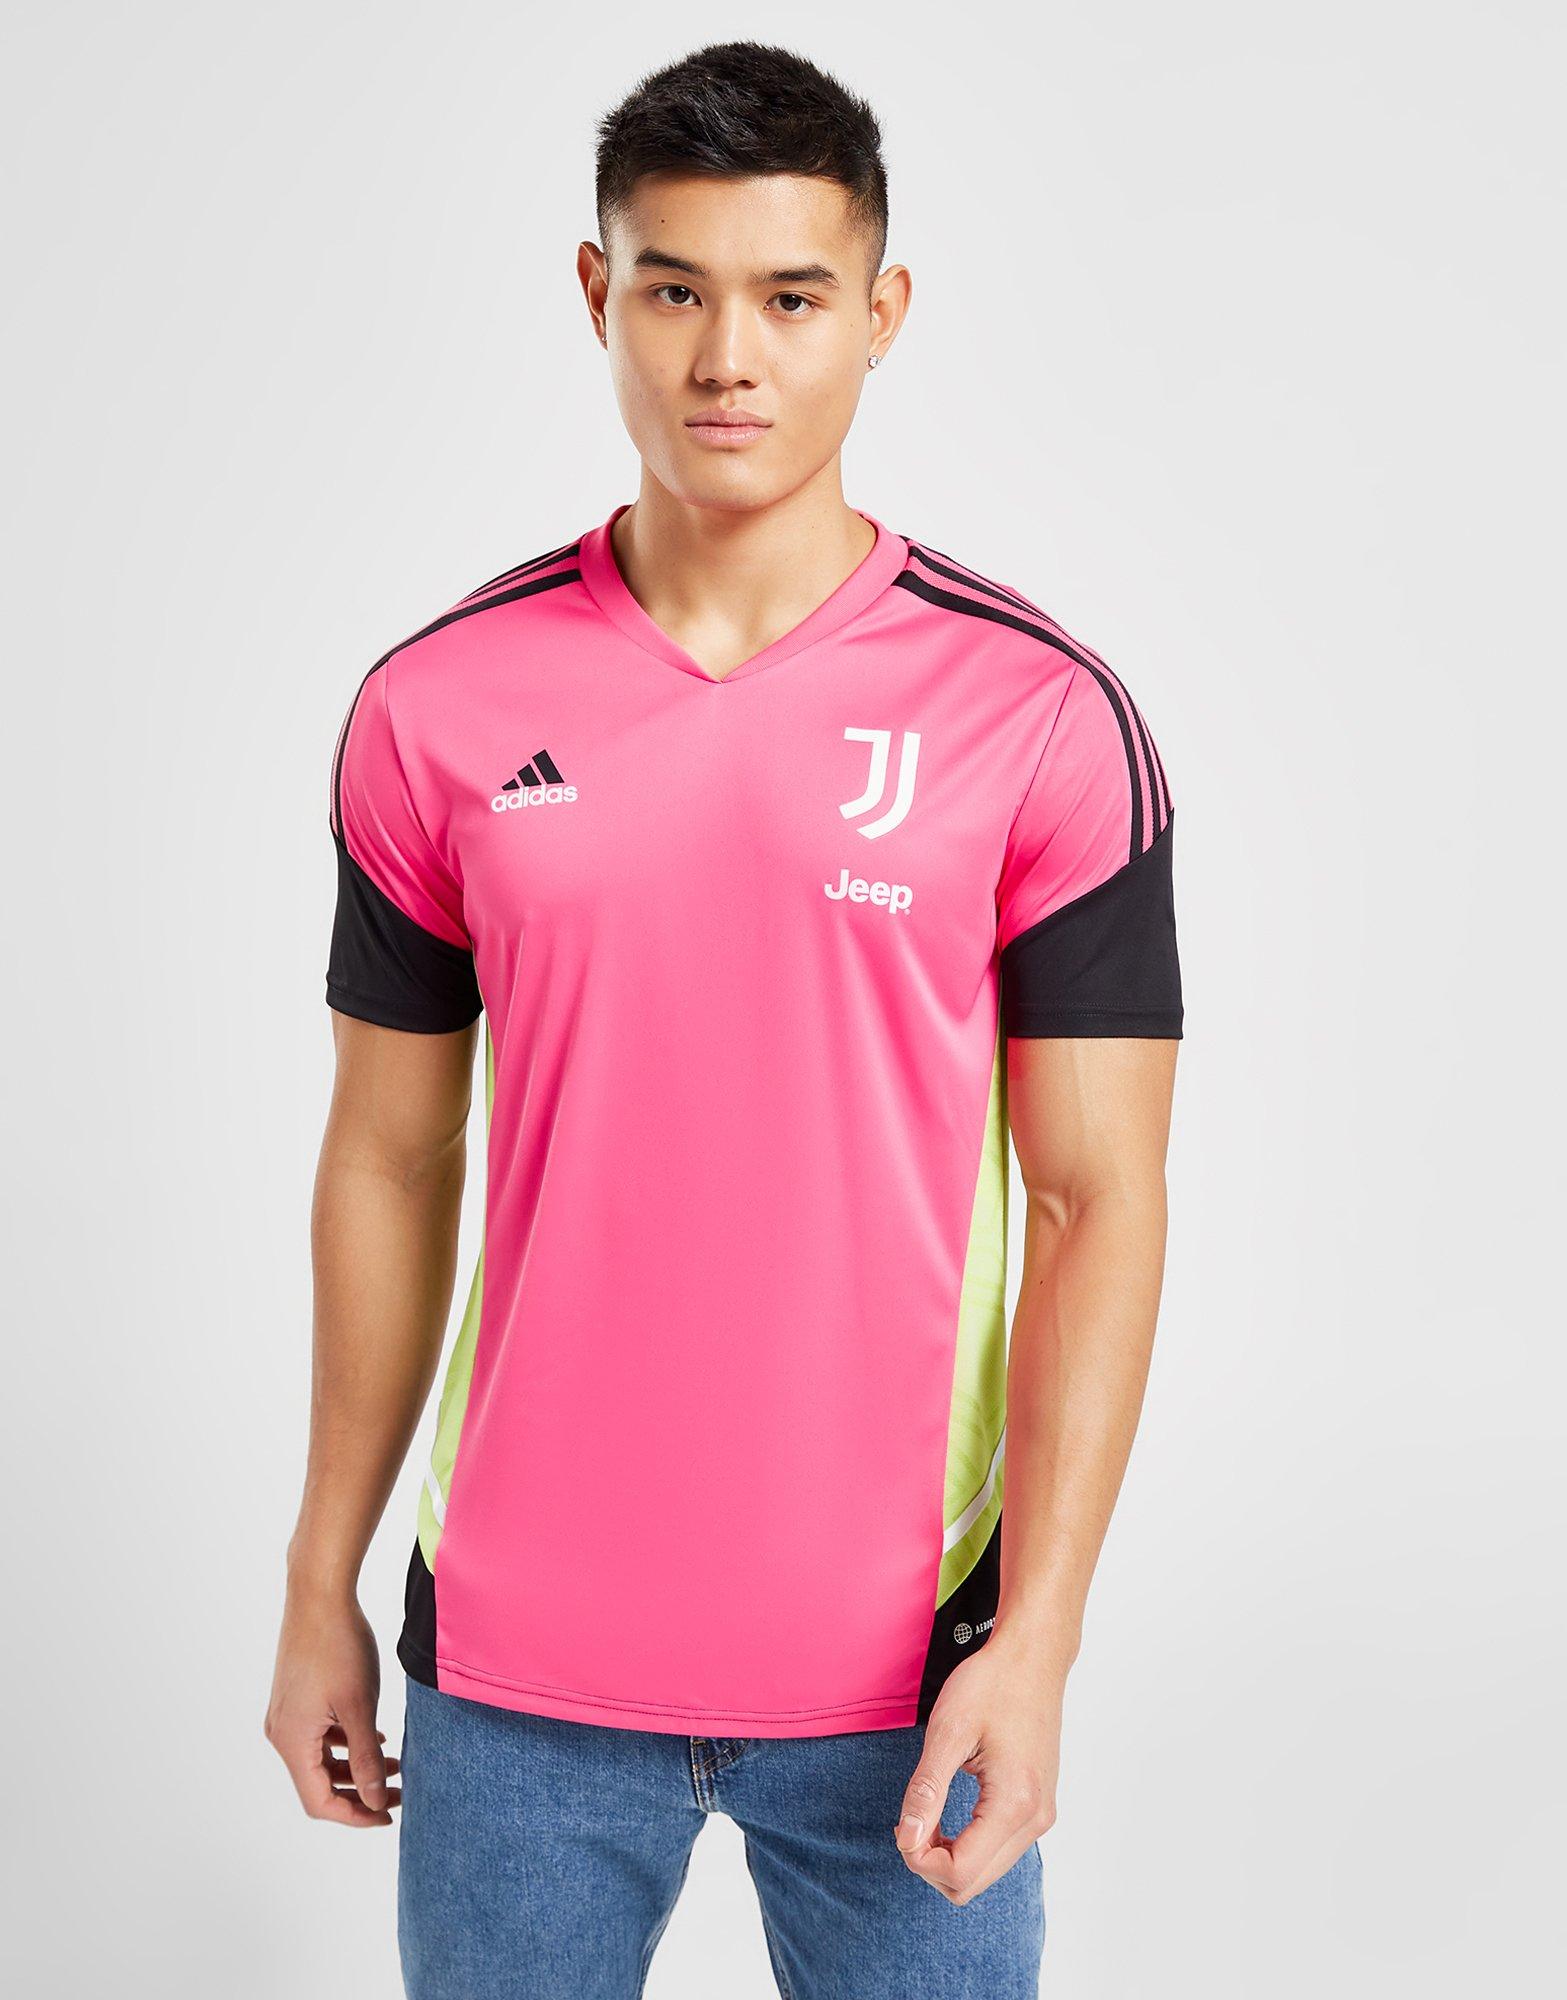 Bedrog radium Rouwen adidas Juventus Training Shirt | JD Sports Global